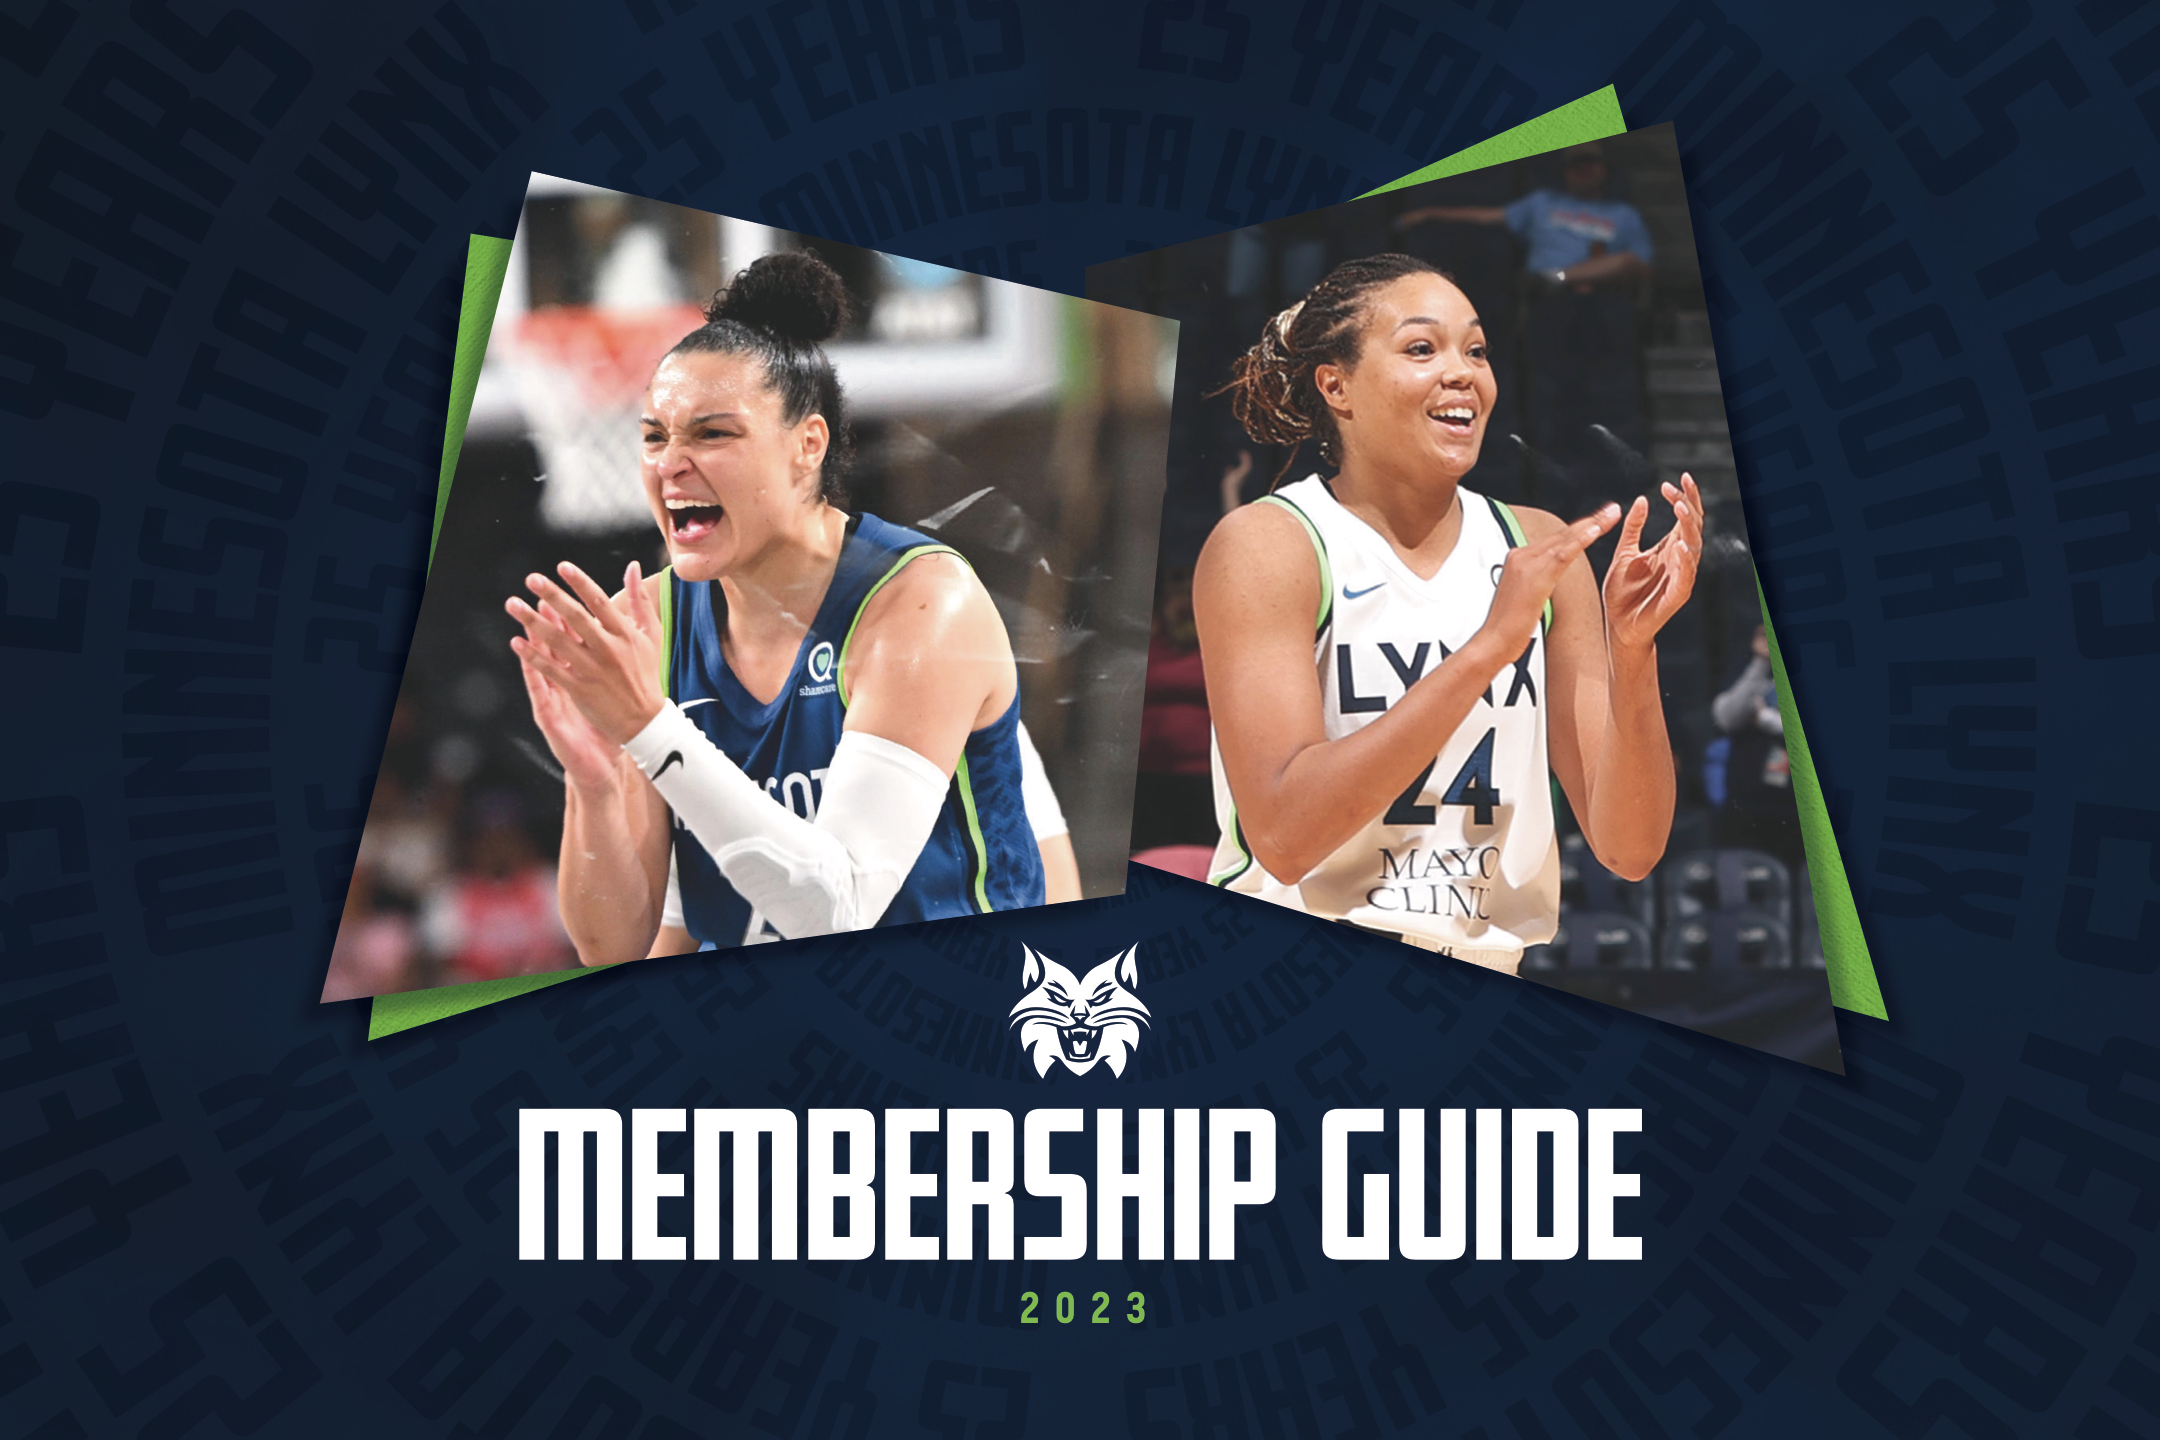 2022-23 Membership Guide